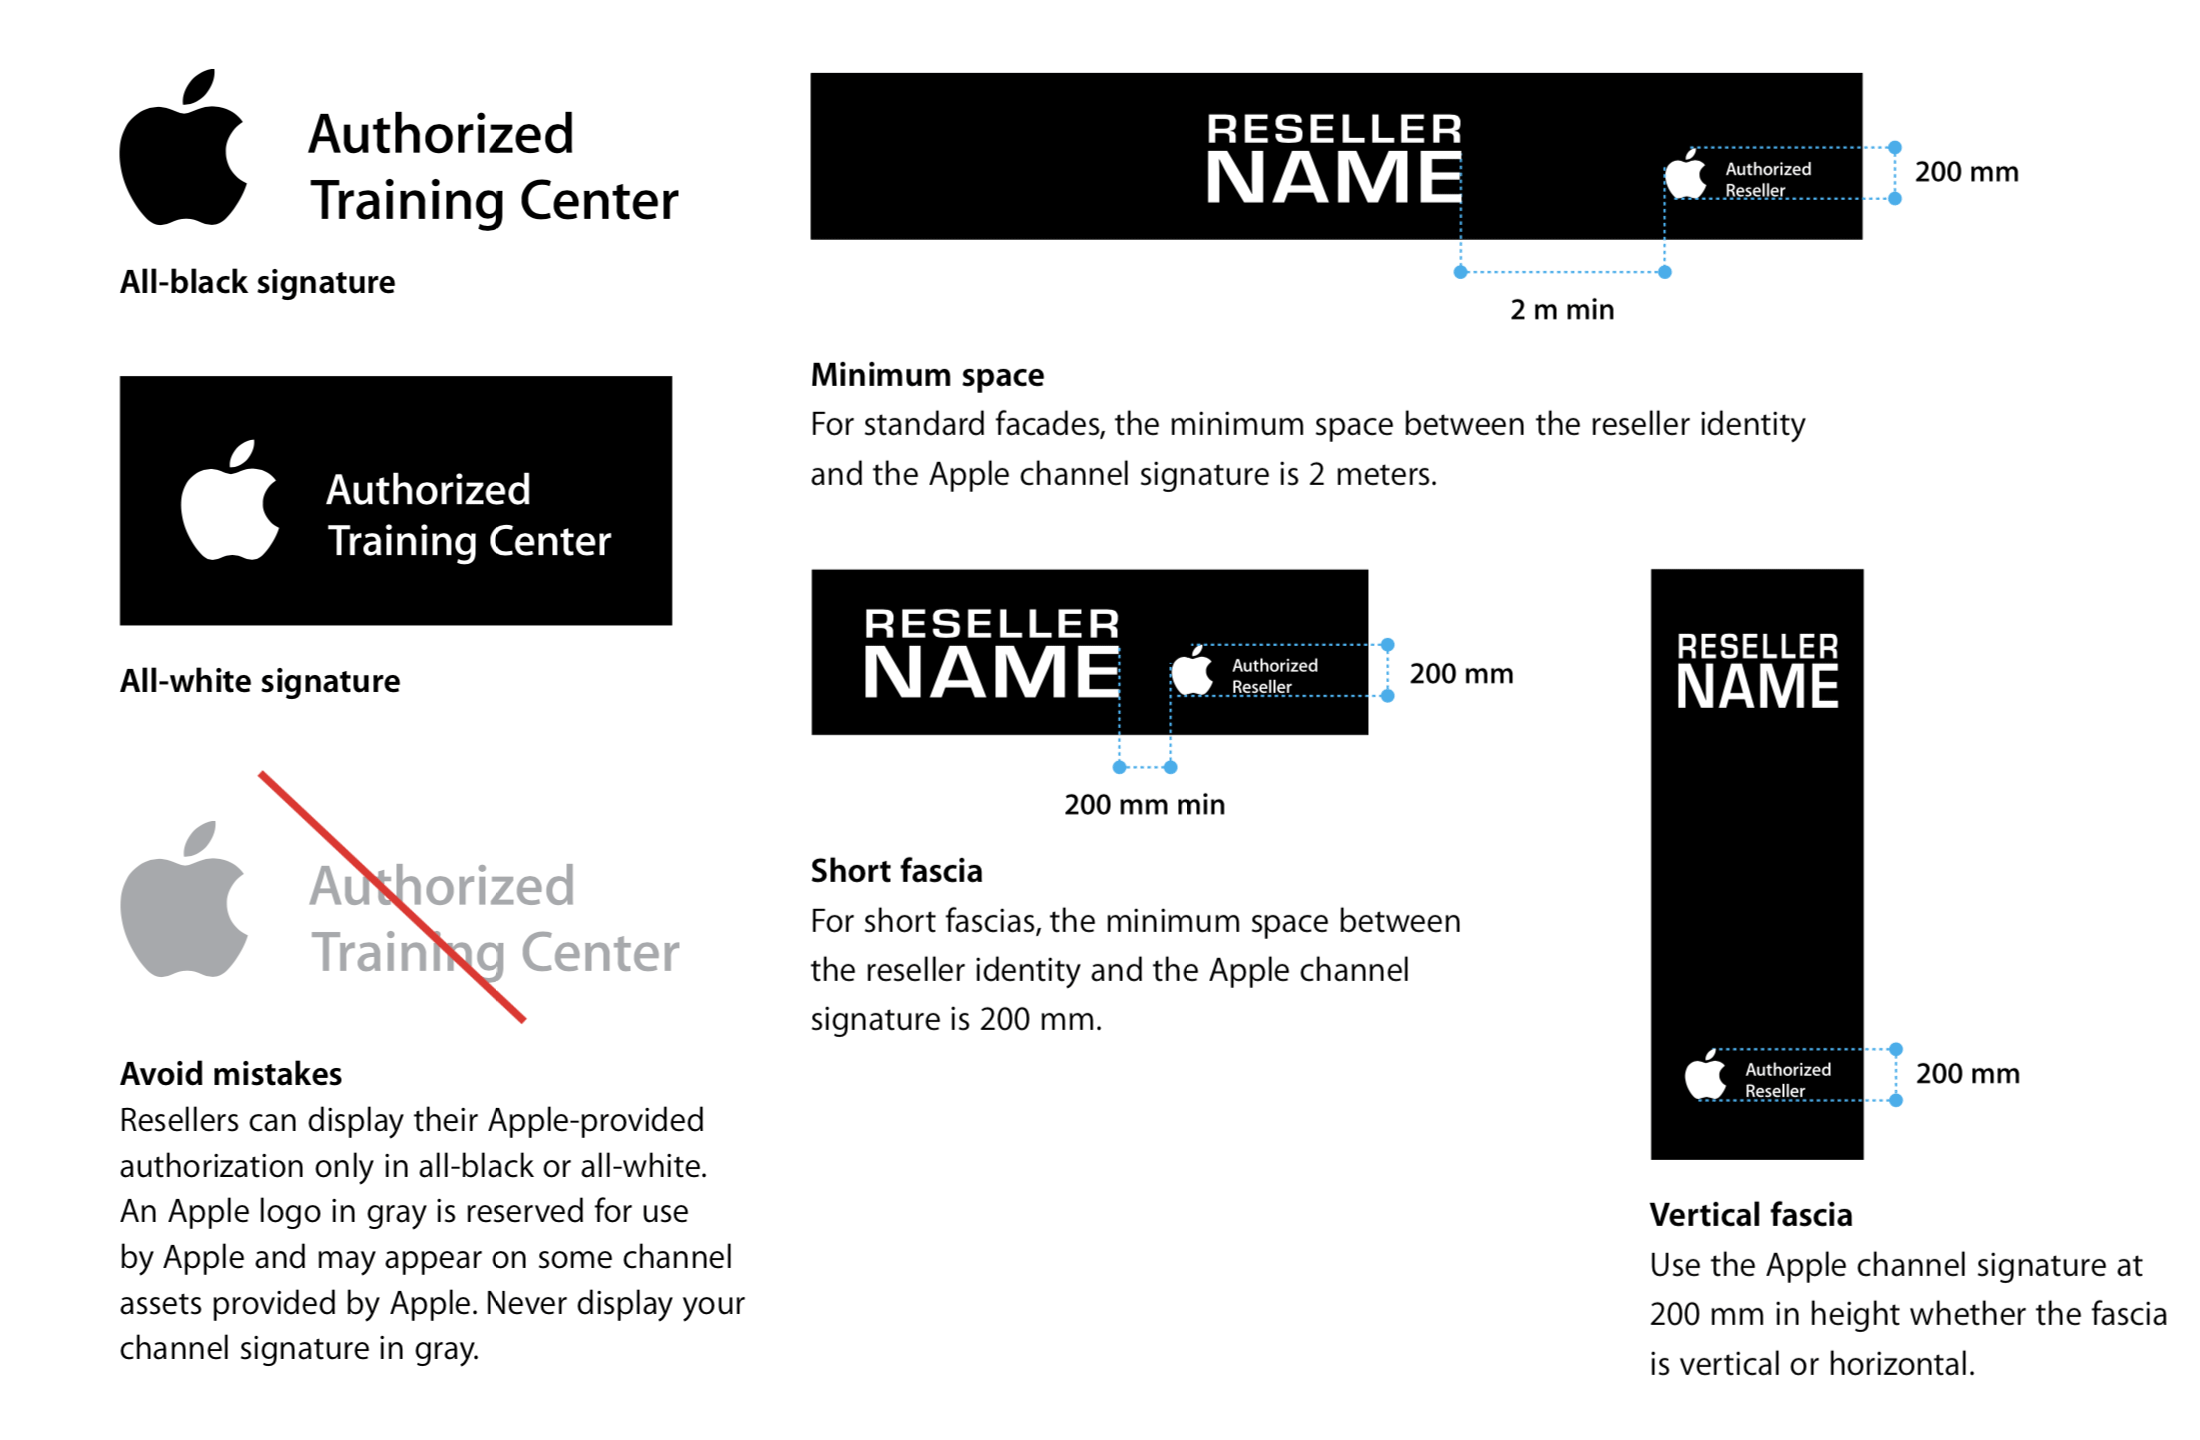 即使是將 Logo 授權給經銷商使用，Apple 也訂有嚴謹的使用規範，充分做到品牌形象控管